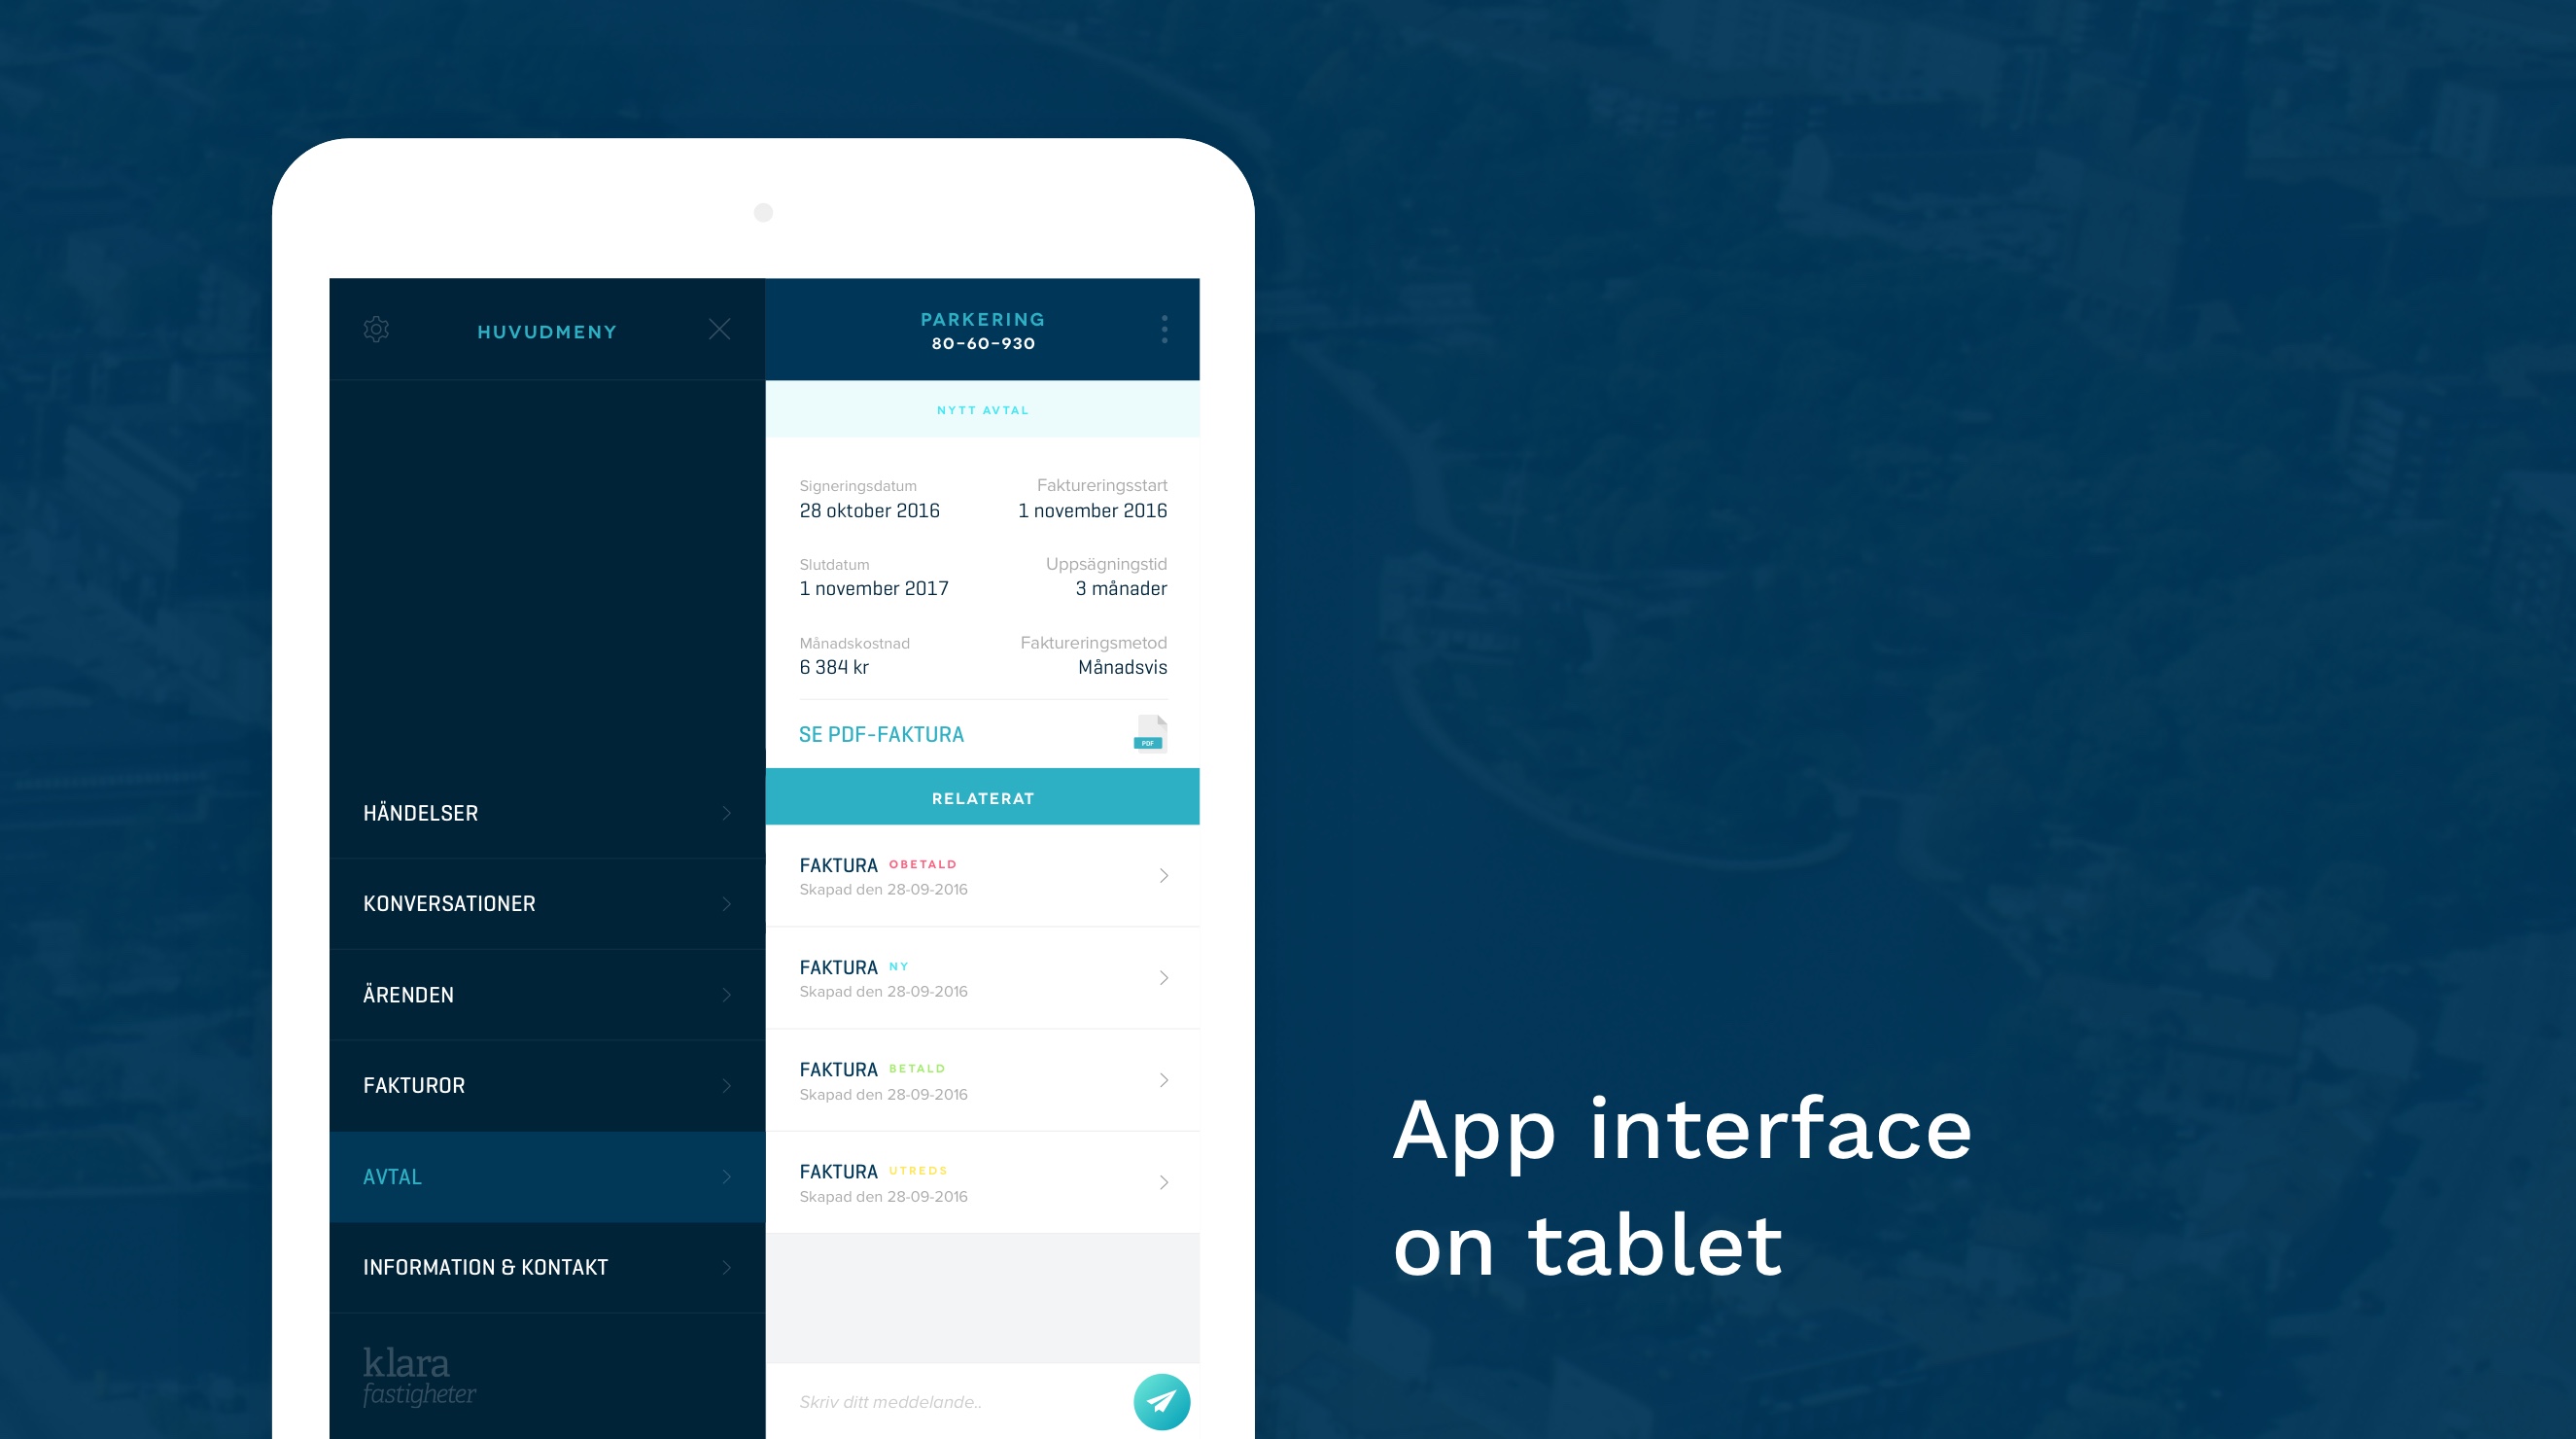 Klara Fastigheter app interface design on tablet